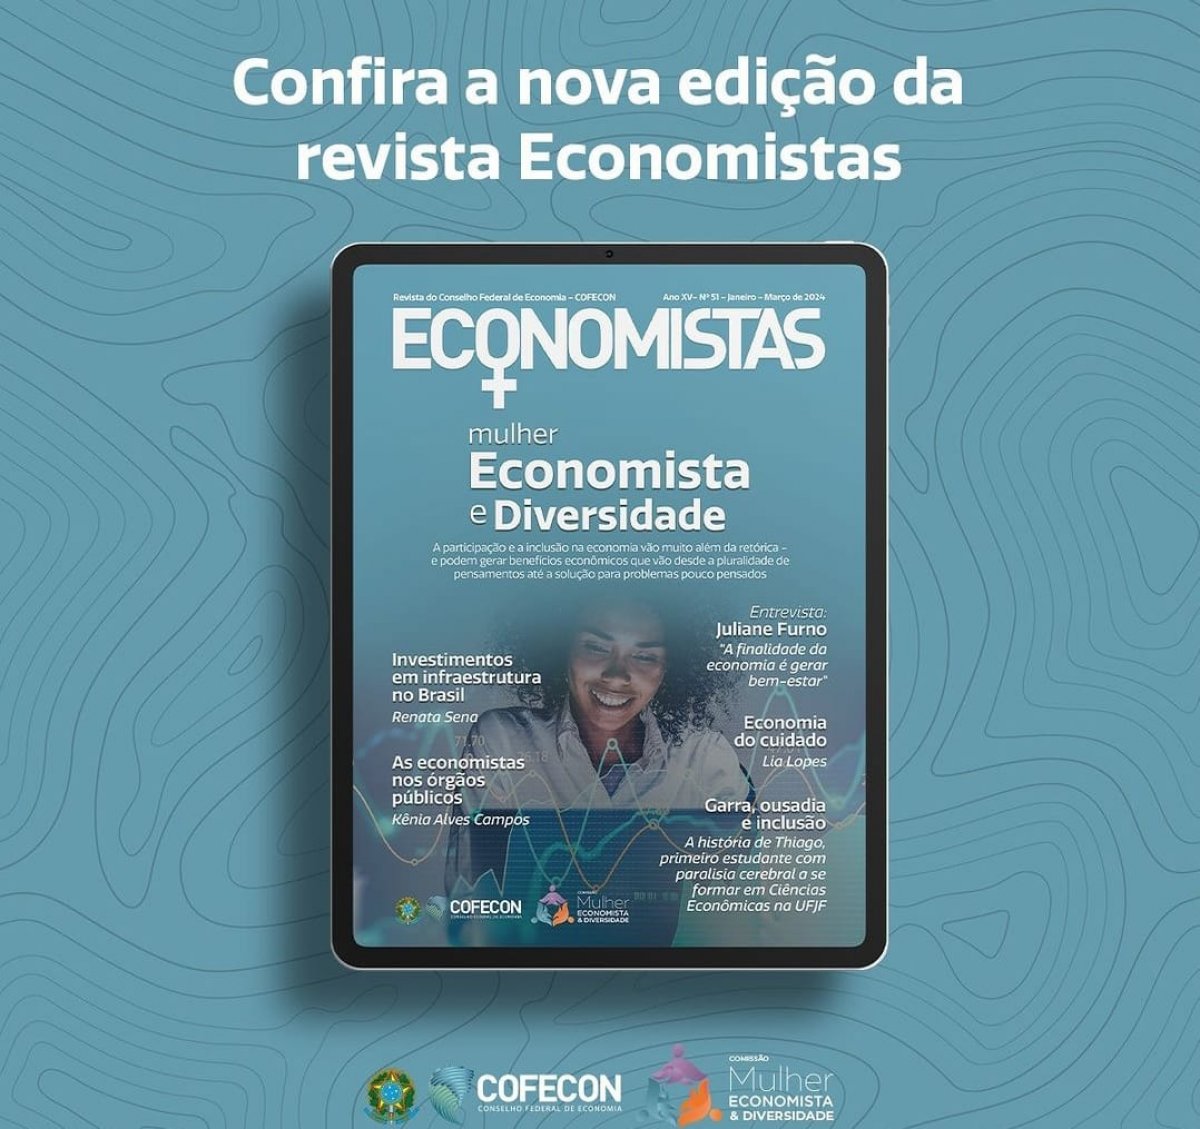 Confira a edição da revista Economistas - Corecon/SC